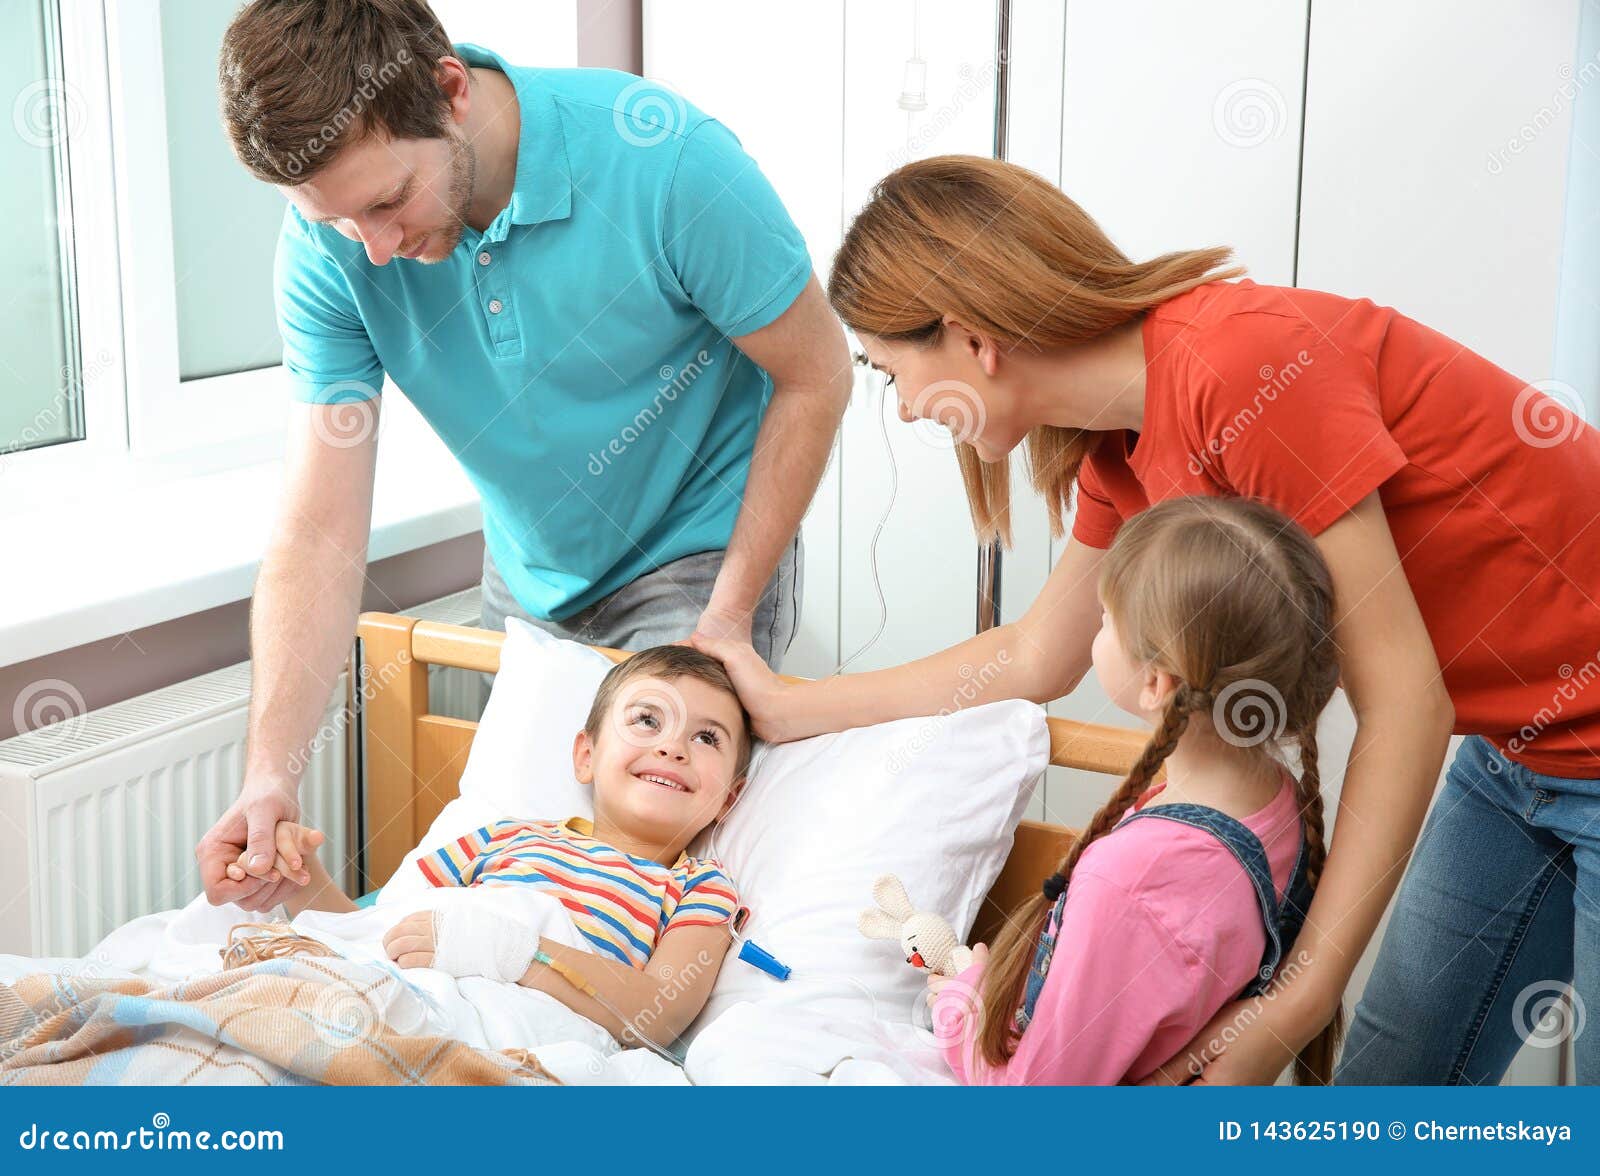 Ребенка навещаю в больнице. Счастливая семья в больнице. Счастливые дети в больнице. Ребёнок навещает детей в больнице. Семья и ребенок в больнице.